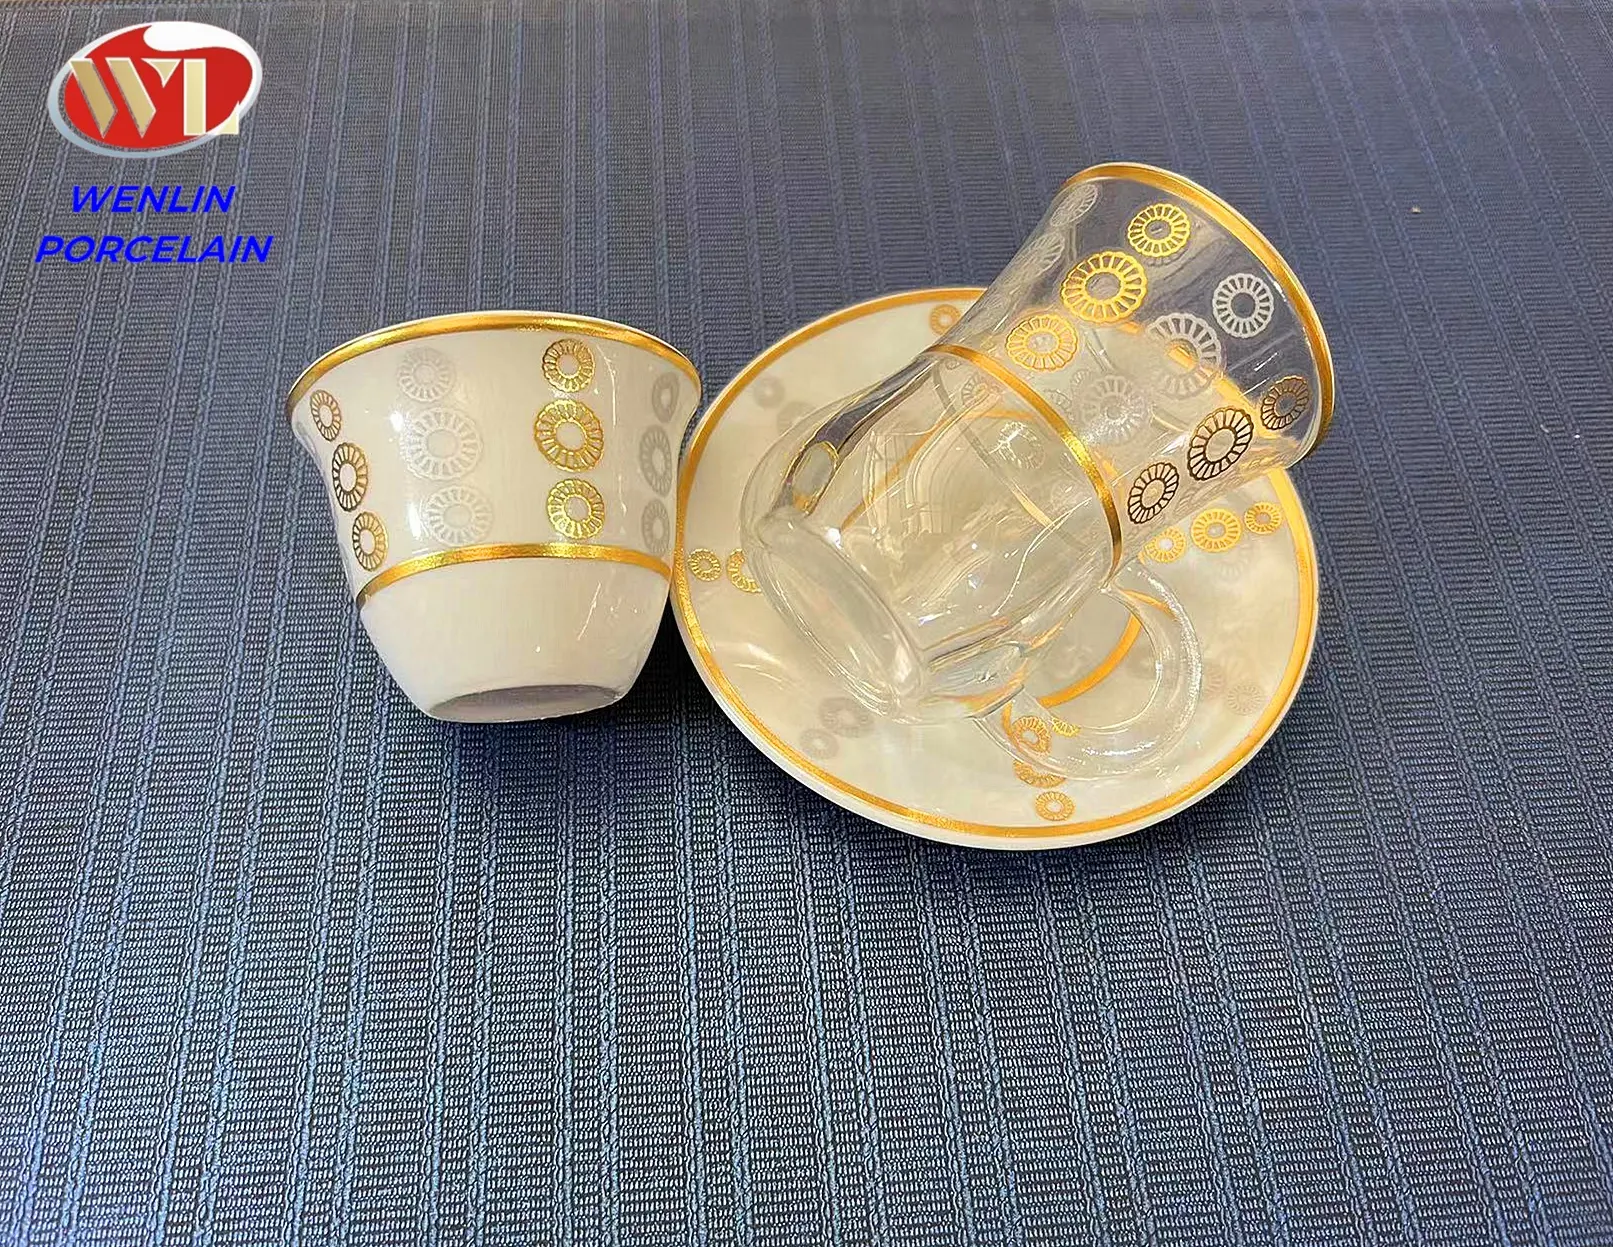 Wenlin usine arabe éthiopien céramique et porcelaine bouteille en cristal verre tasse à thé tasse à café ensemble Habesha eau jus Ramadan